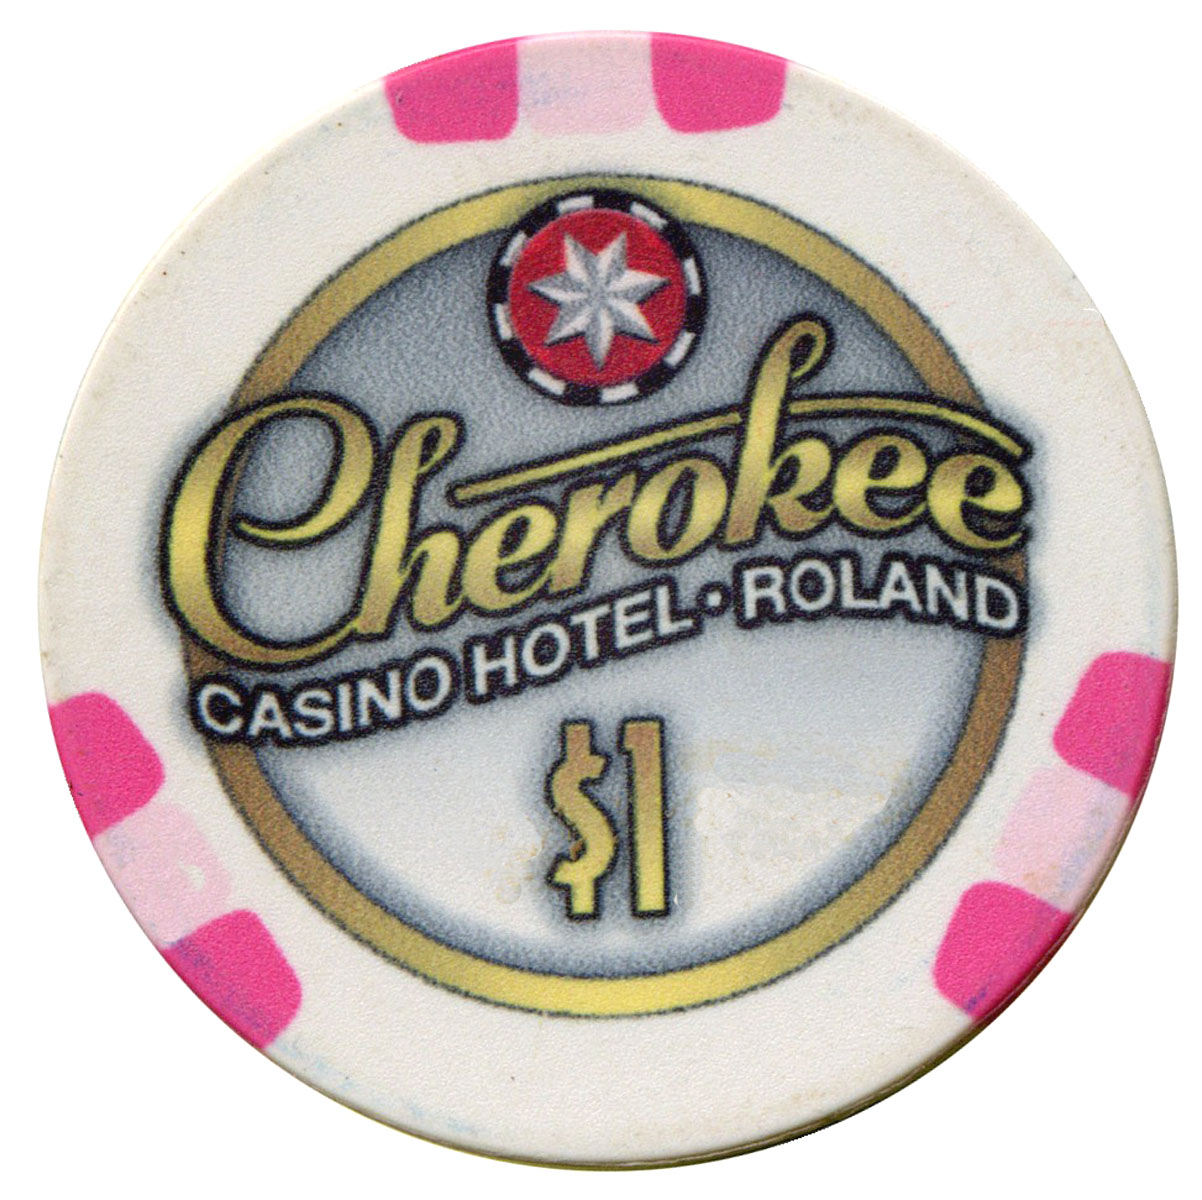 cherokee casino roland linkden